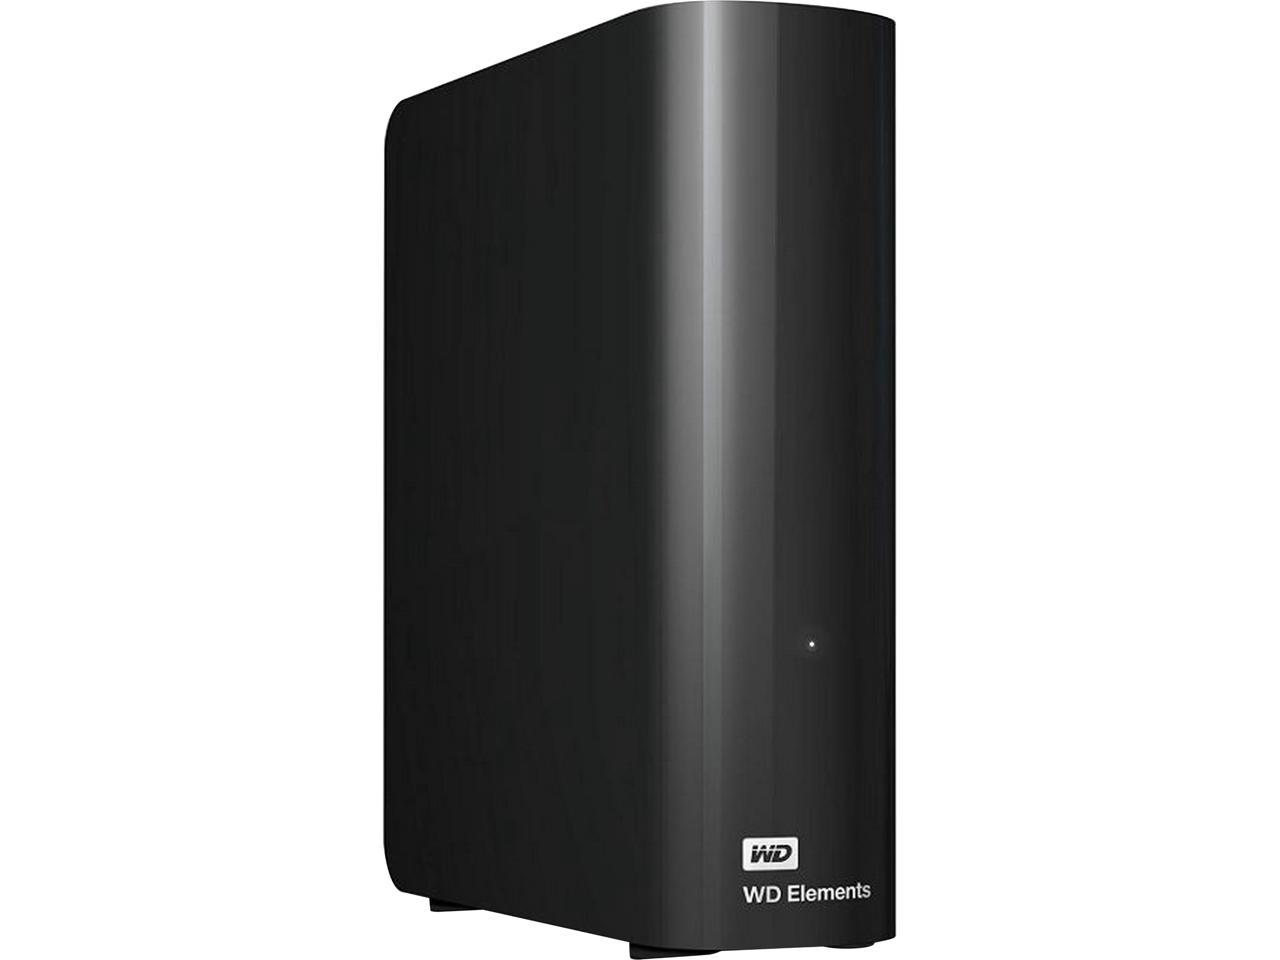 14TB WD Elements Desktop Hard Drive $200 @Newegg ($170 w/Zip CO)